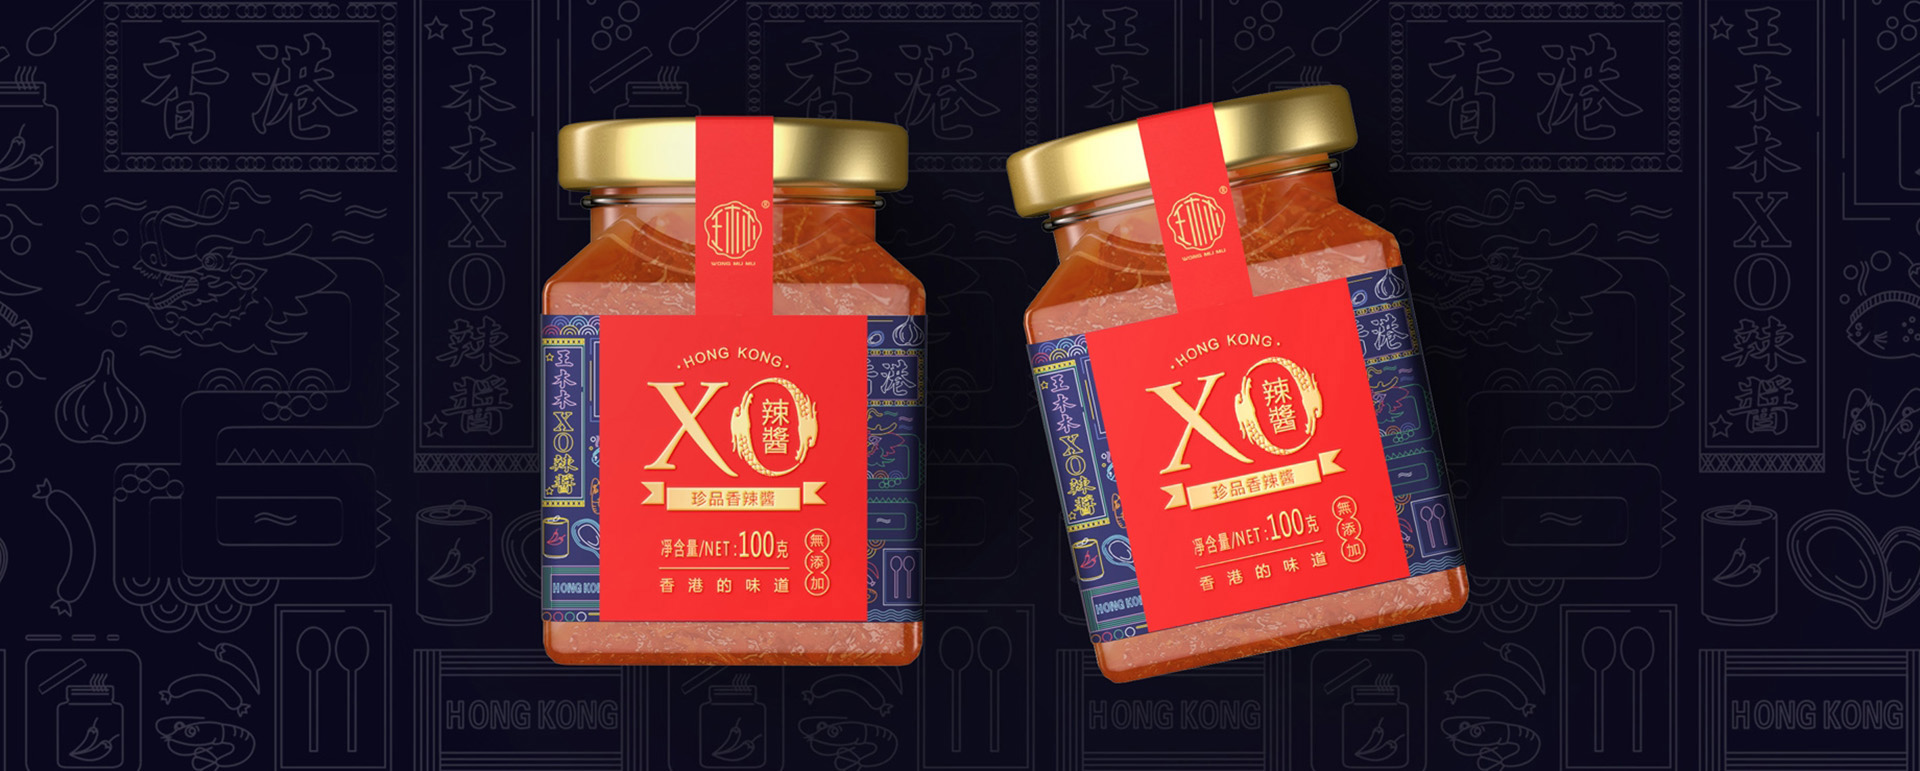 王木木XO辣醬包裝策劃設計|食品品牌策劃設計|深圳包裝設計公司